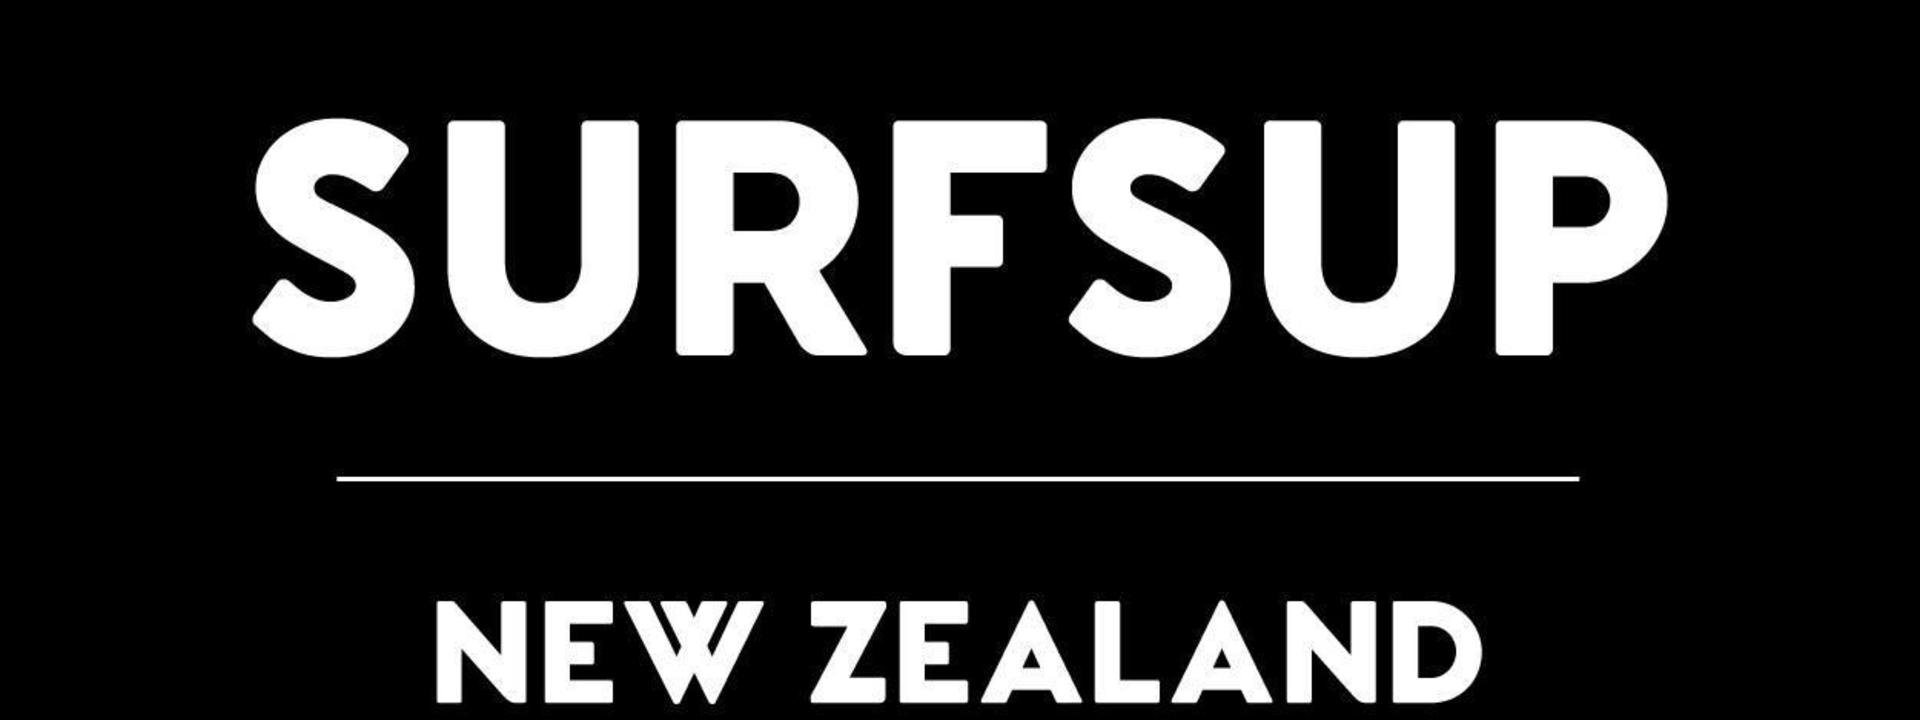 Logo: Surfsup NZL